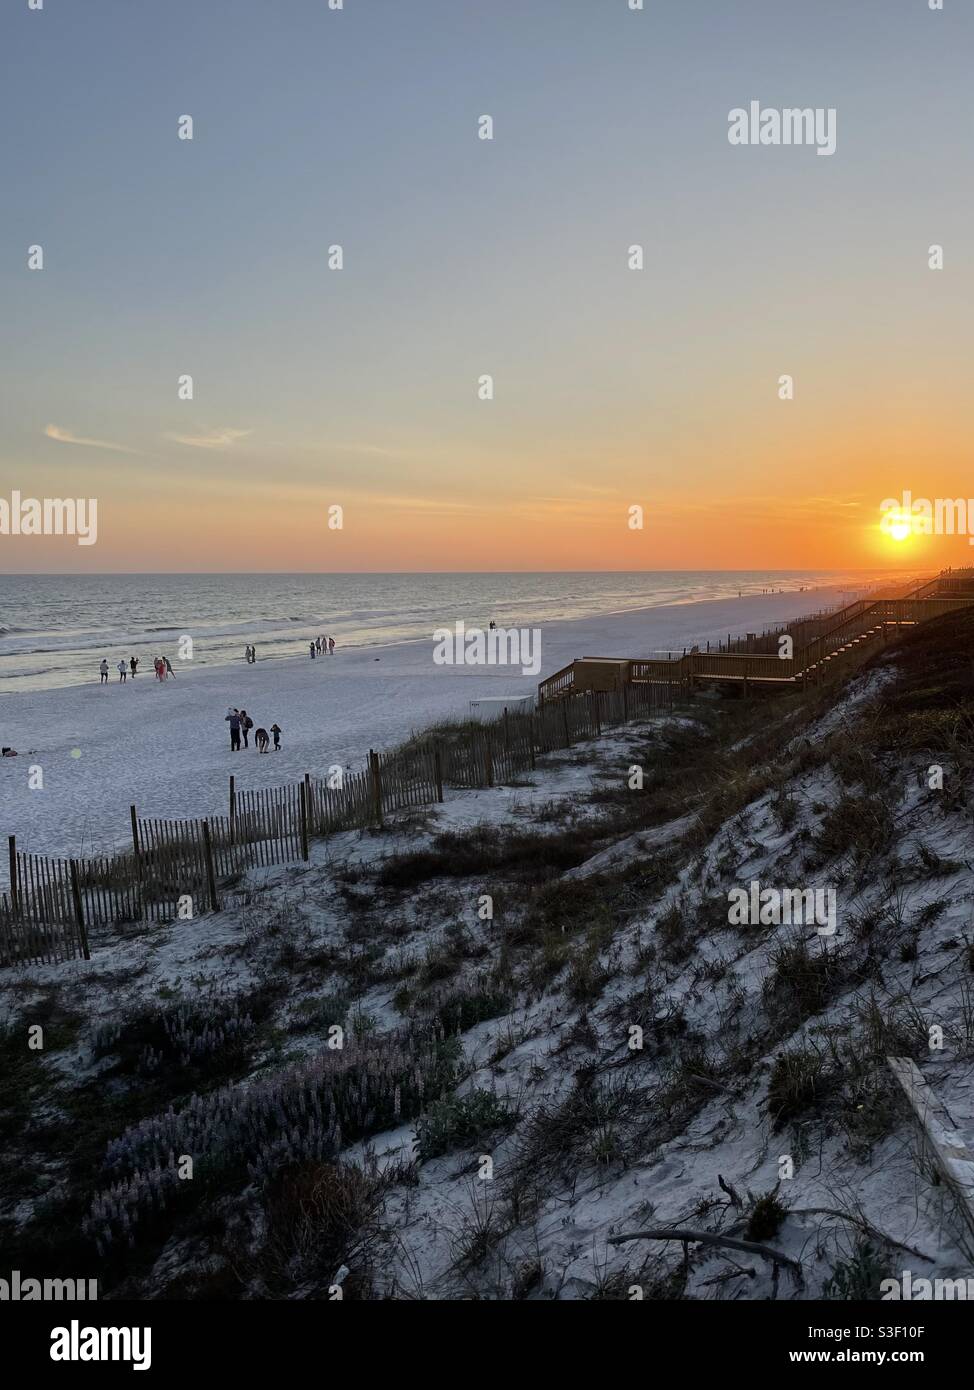 Vista superior de la gente disfrutando de la playa de arena blanca Playa de Florida Foto de stock